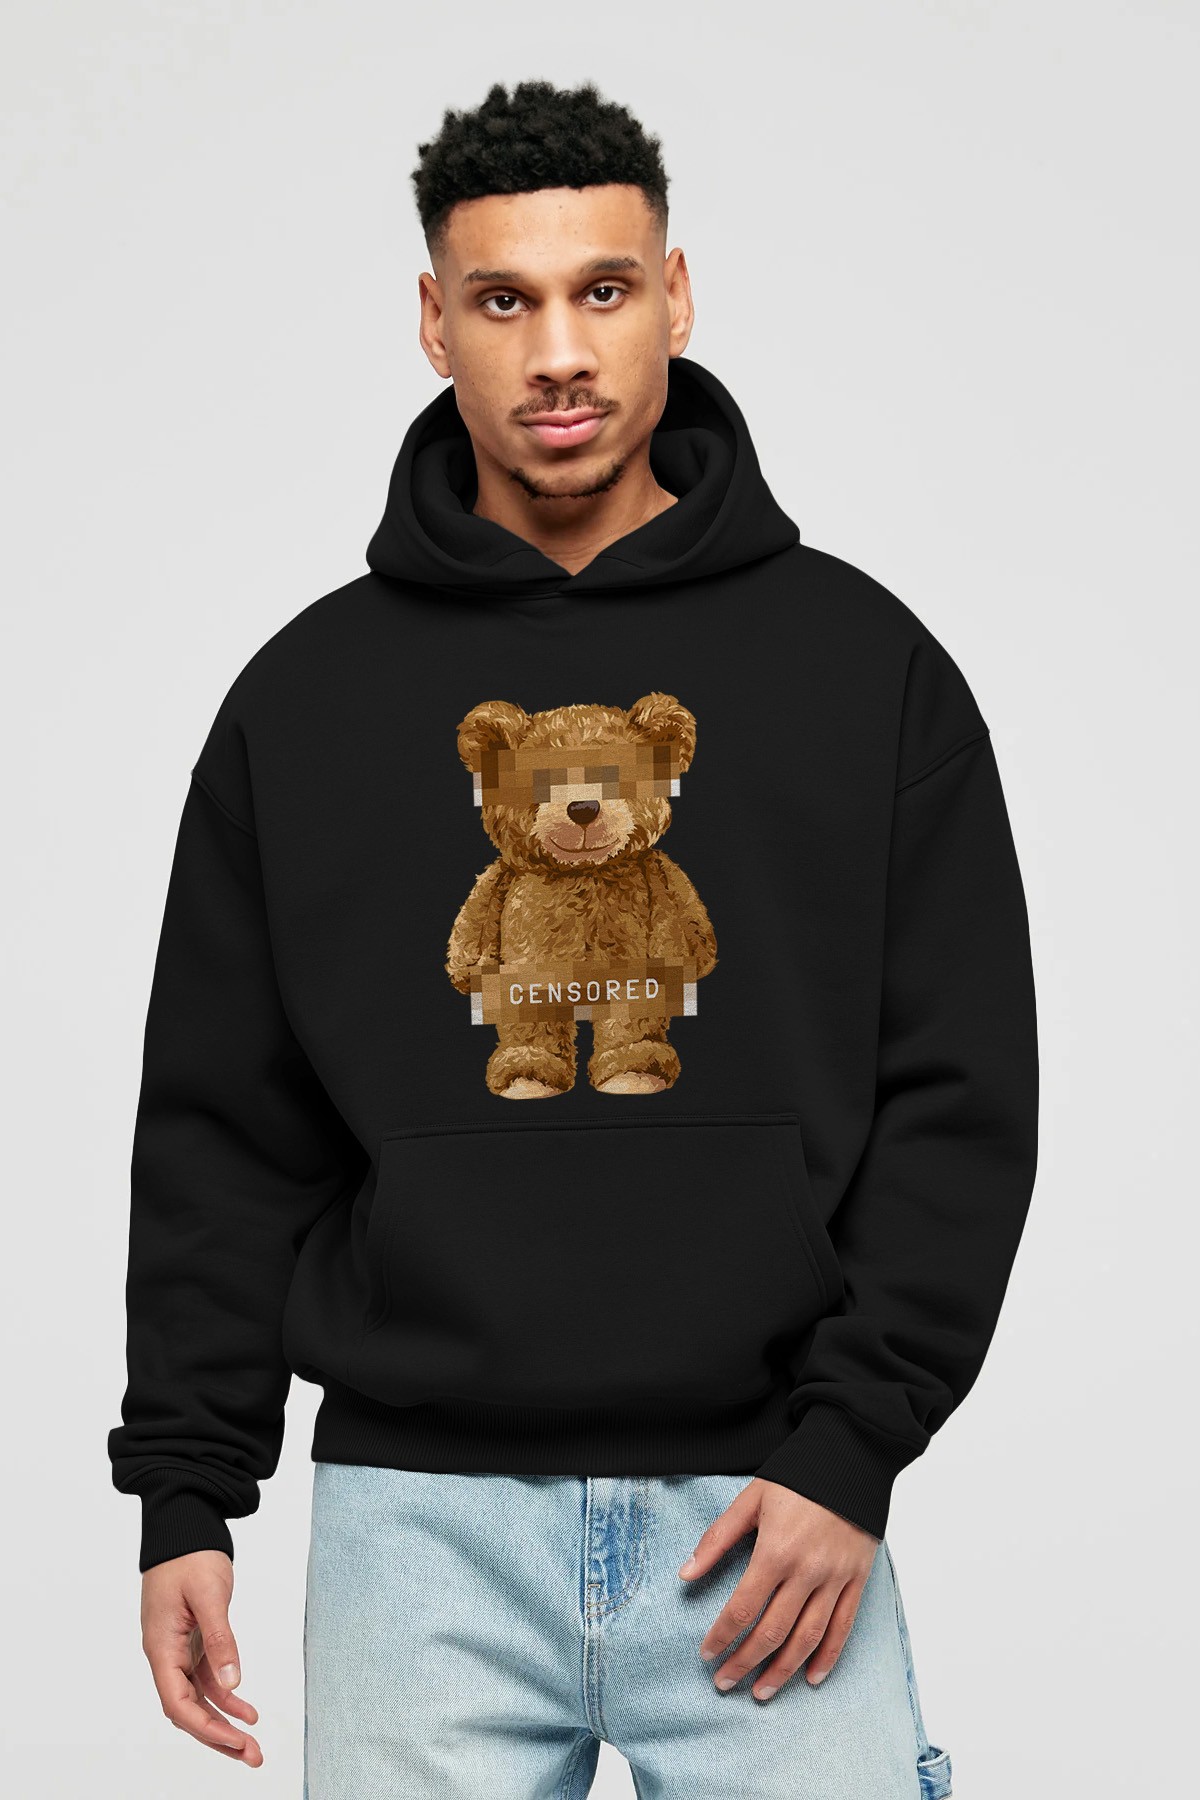 Teddy Bear Censored Ön Baskılı Hoodie Oversize Kapüşonlu Sweatshirt Erkek Kadın Unisex